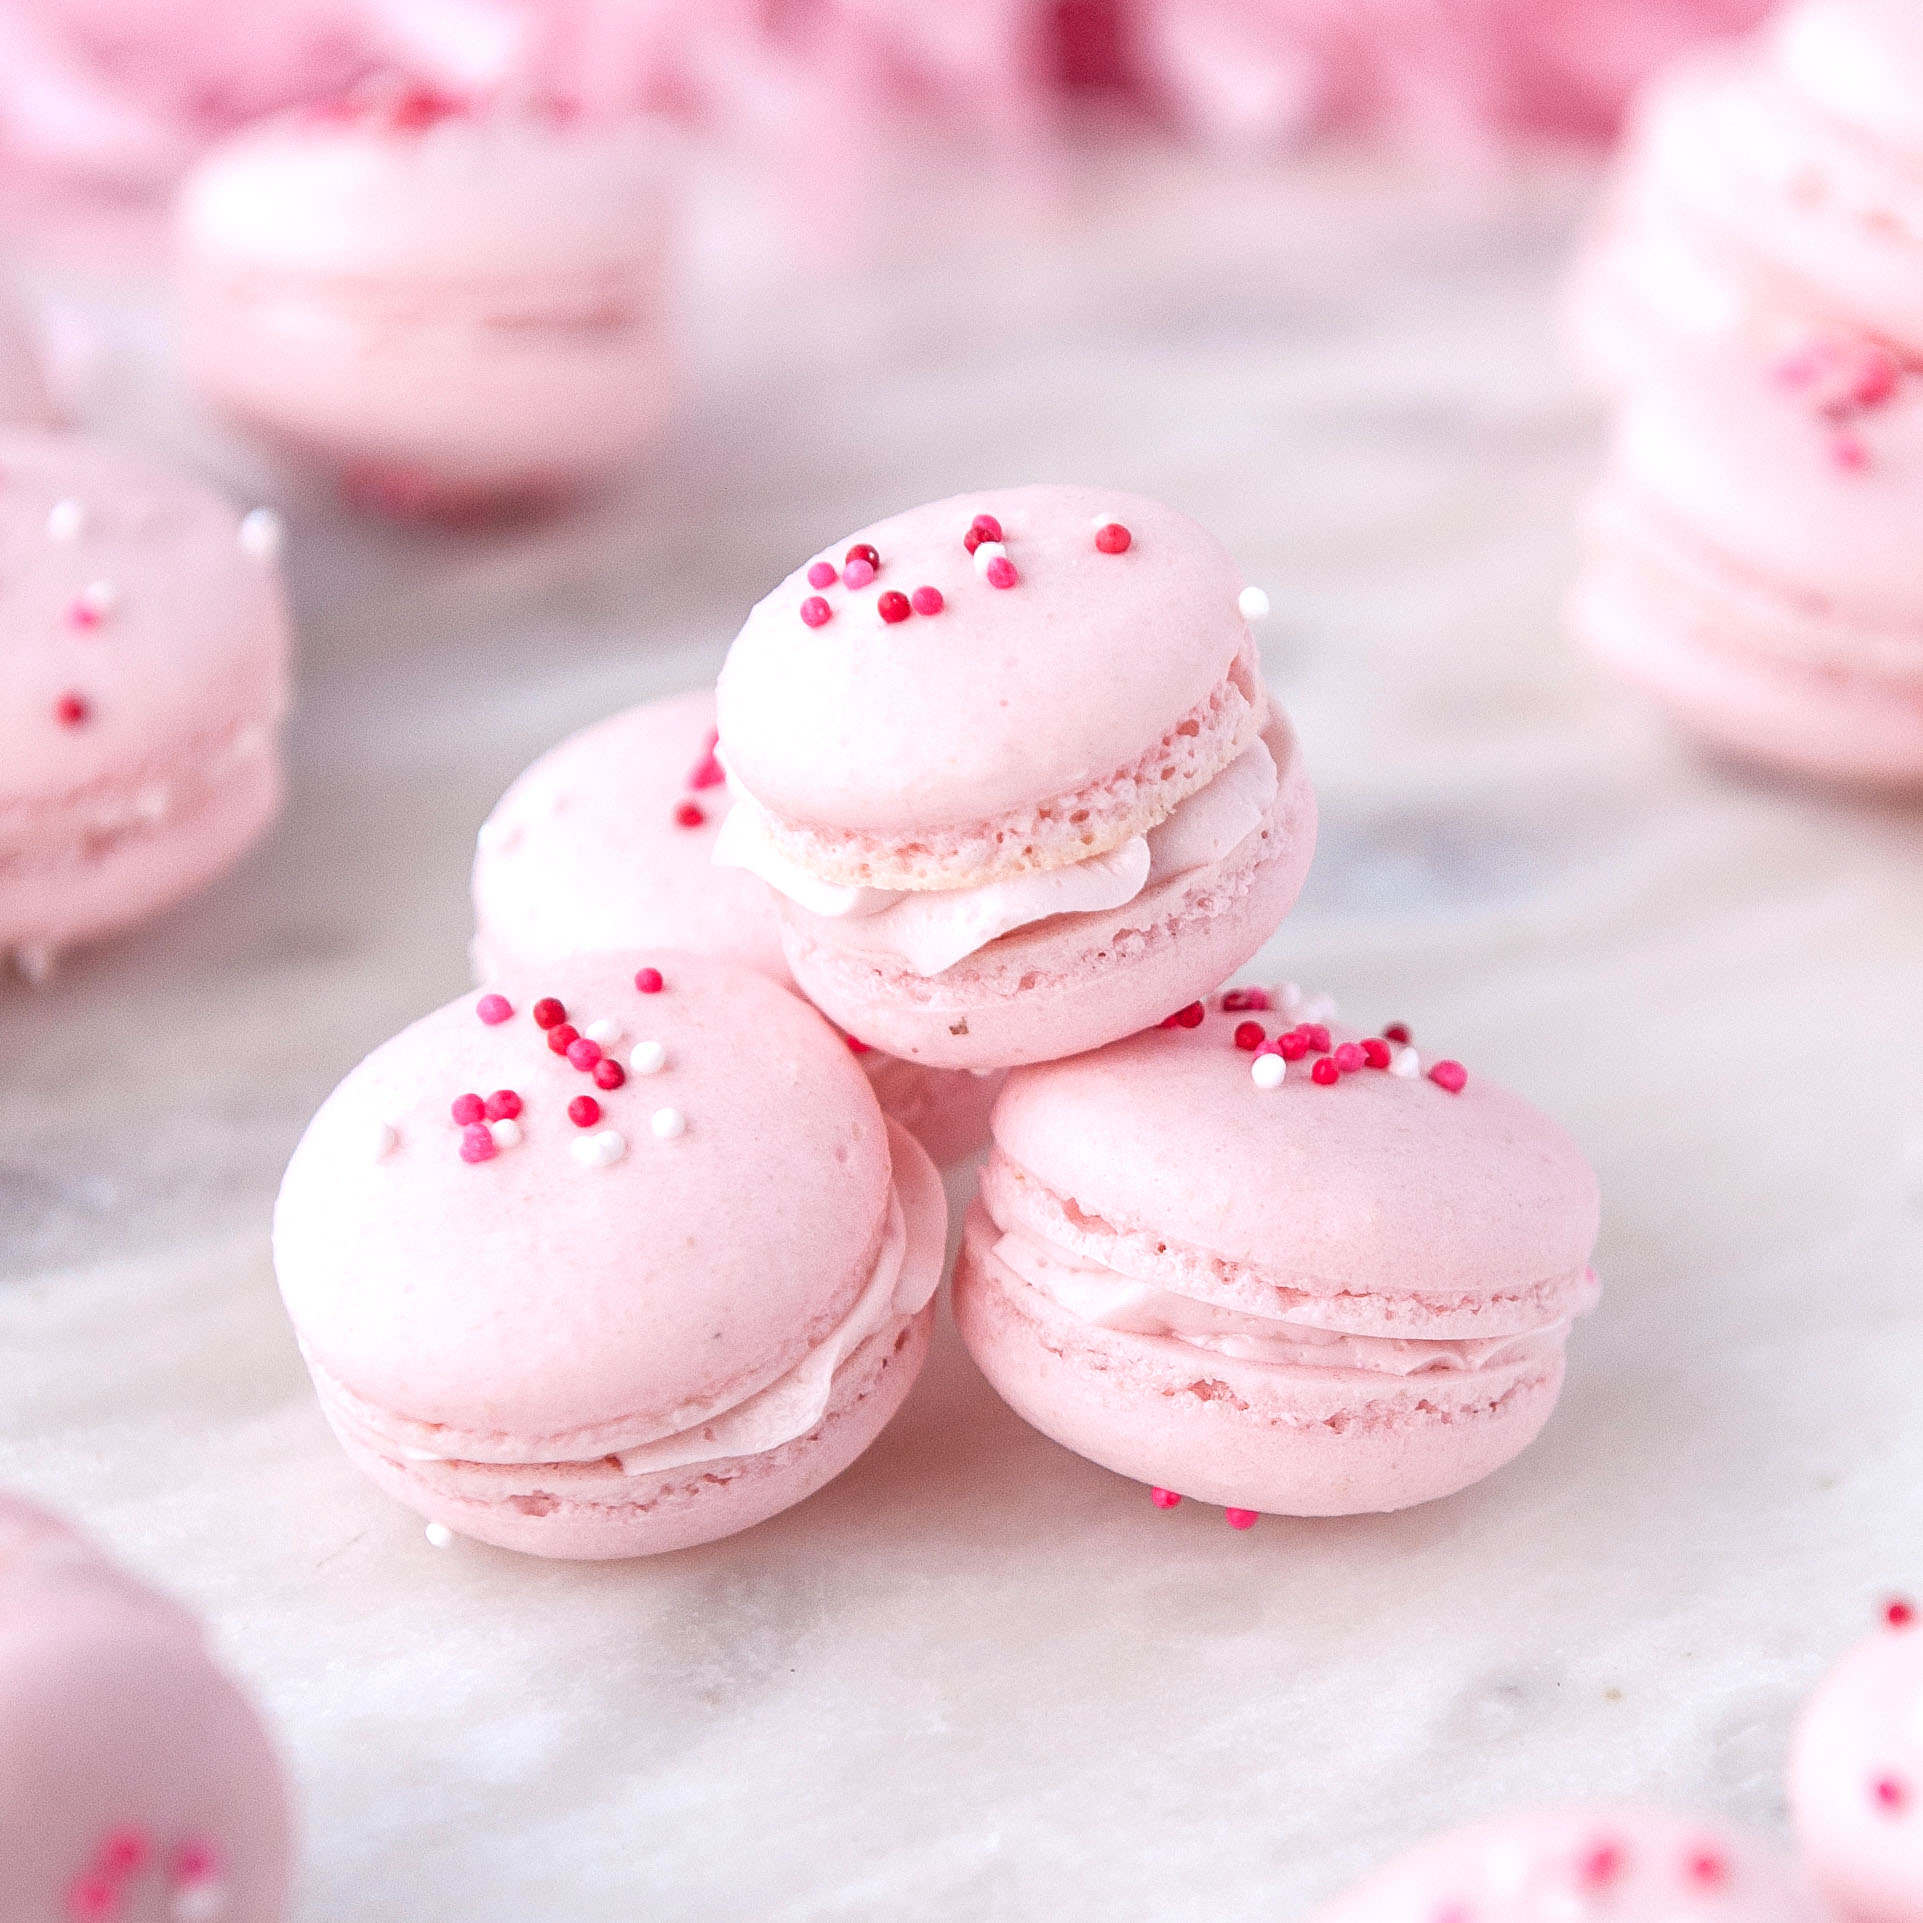 Strawberry Macaron Recipe Easy Step By Step Sugar Geek Show,Bathtub Reglazing